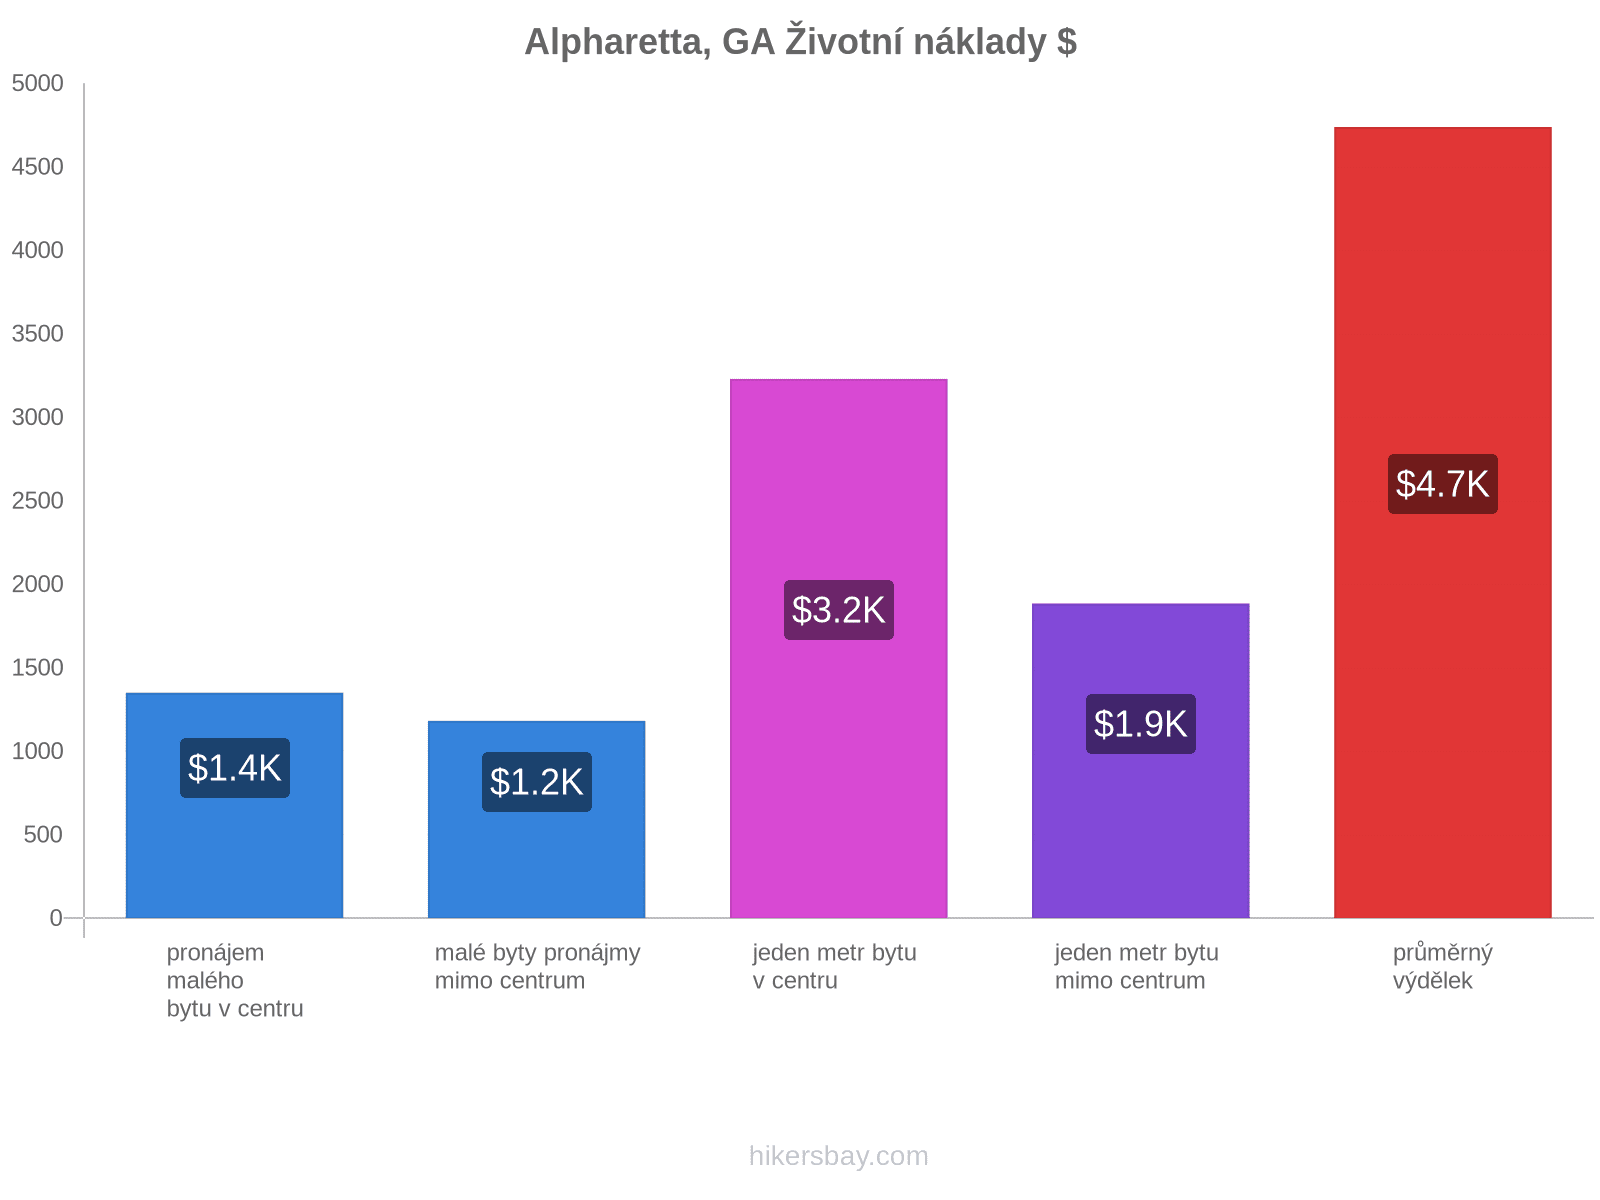 Alpharetta, GA životní náklady hikersbay.com